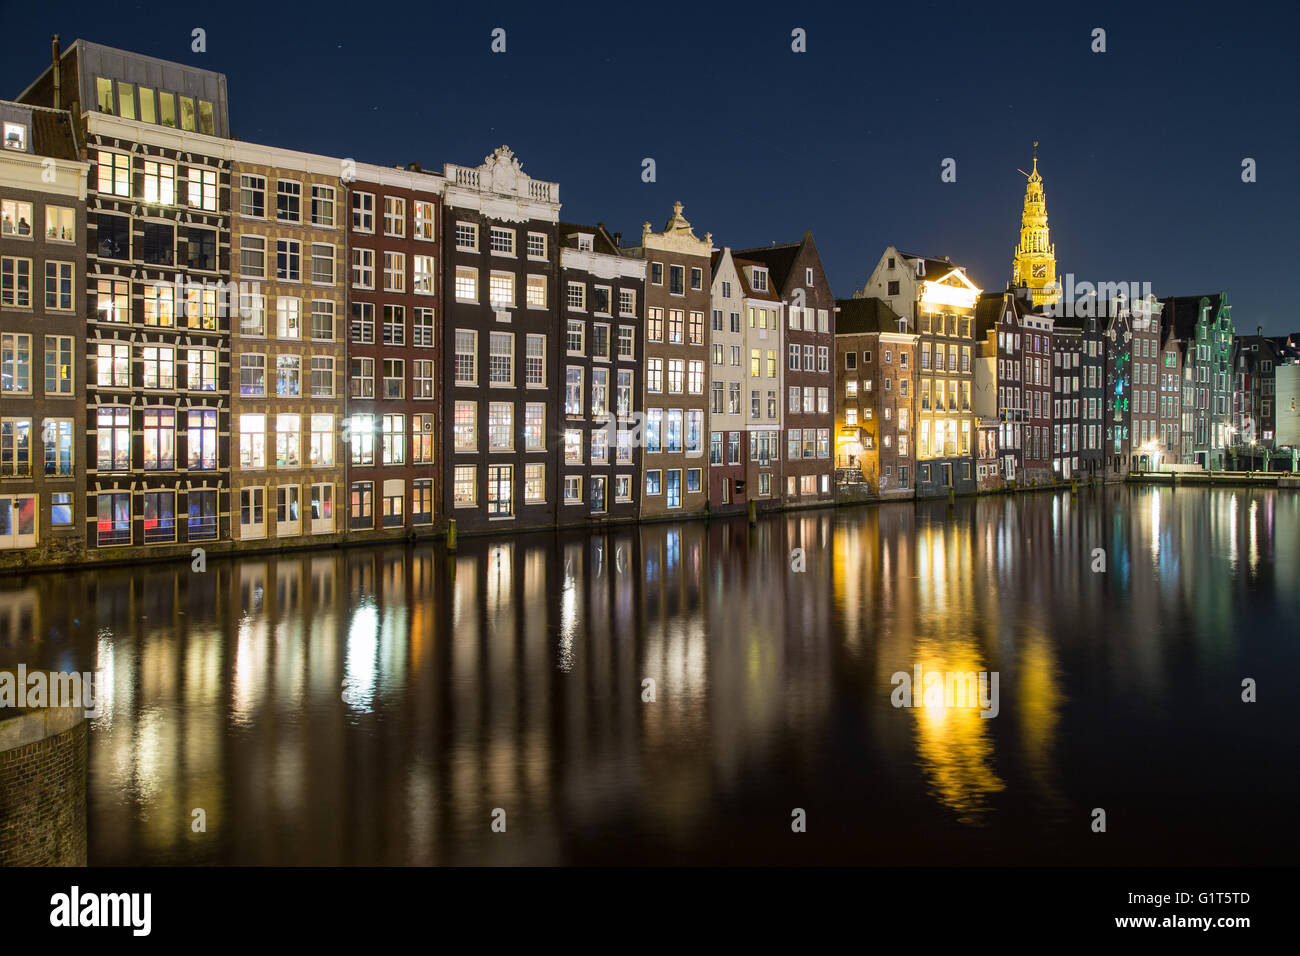 Alte Gebäude entlang der Damrak in Amsterdam bei Nacht. Reflexionen im Wasser zu sehen. Stockfoto